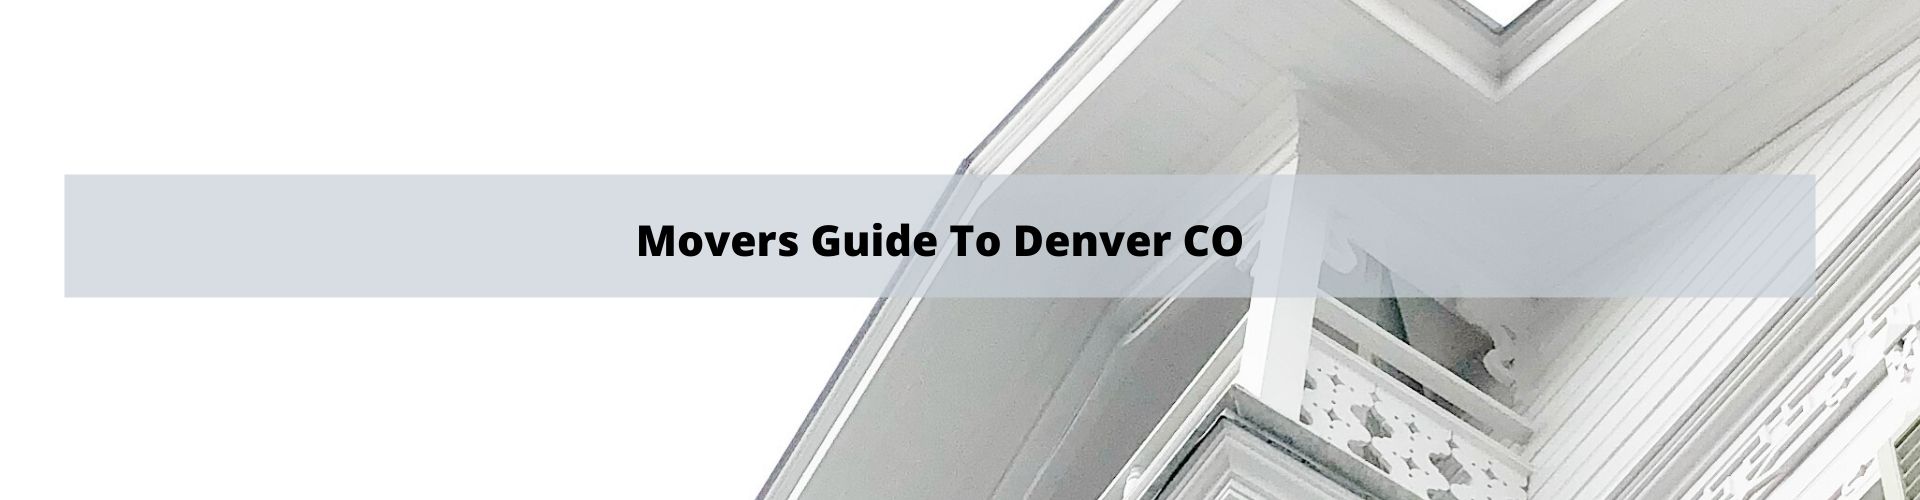 Movers Guide To Denver Colorado